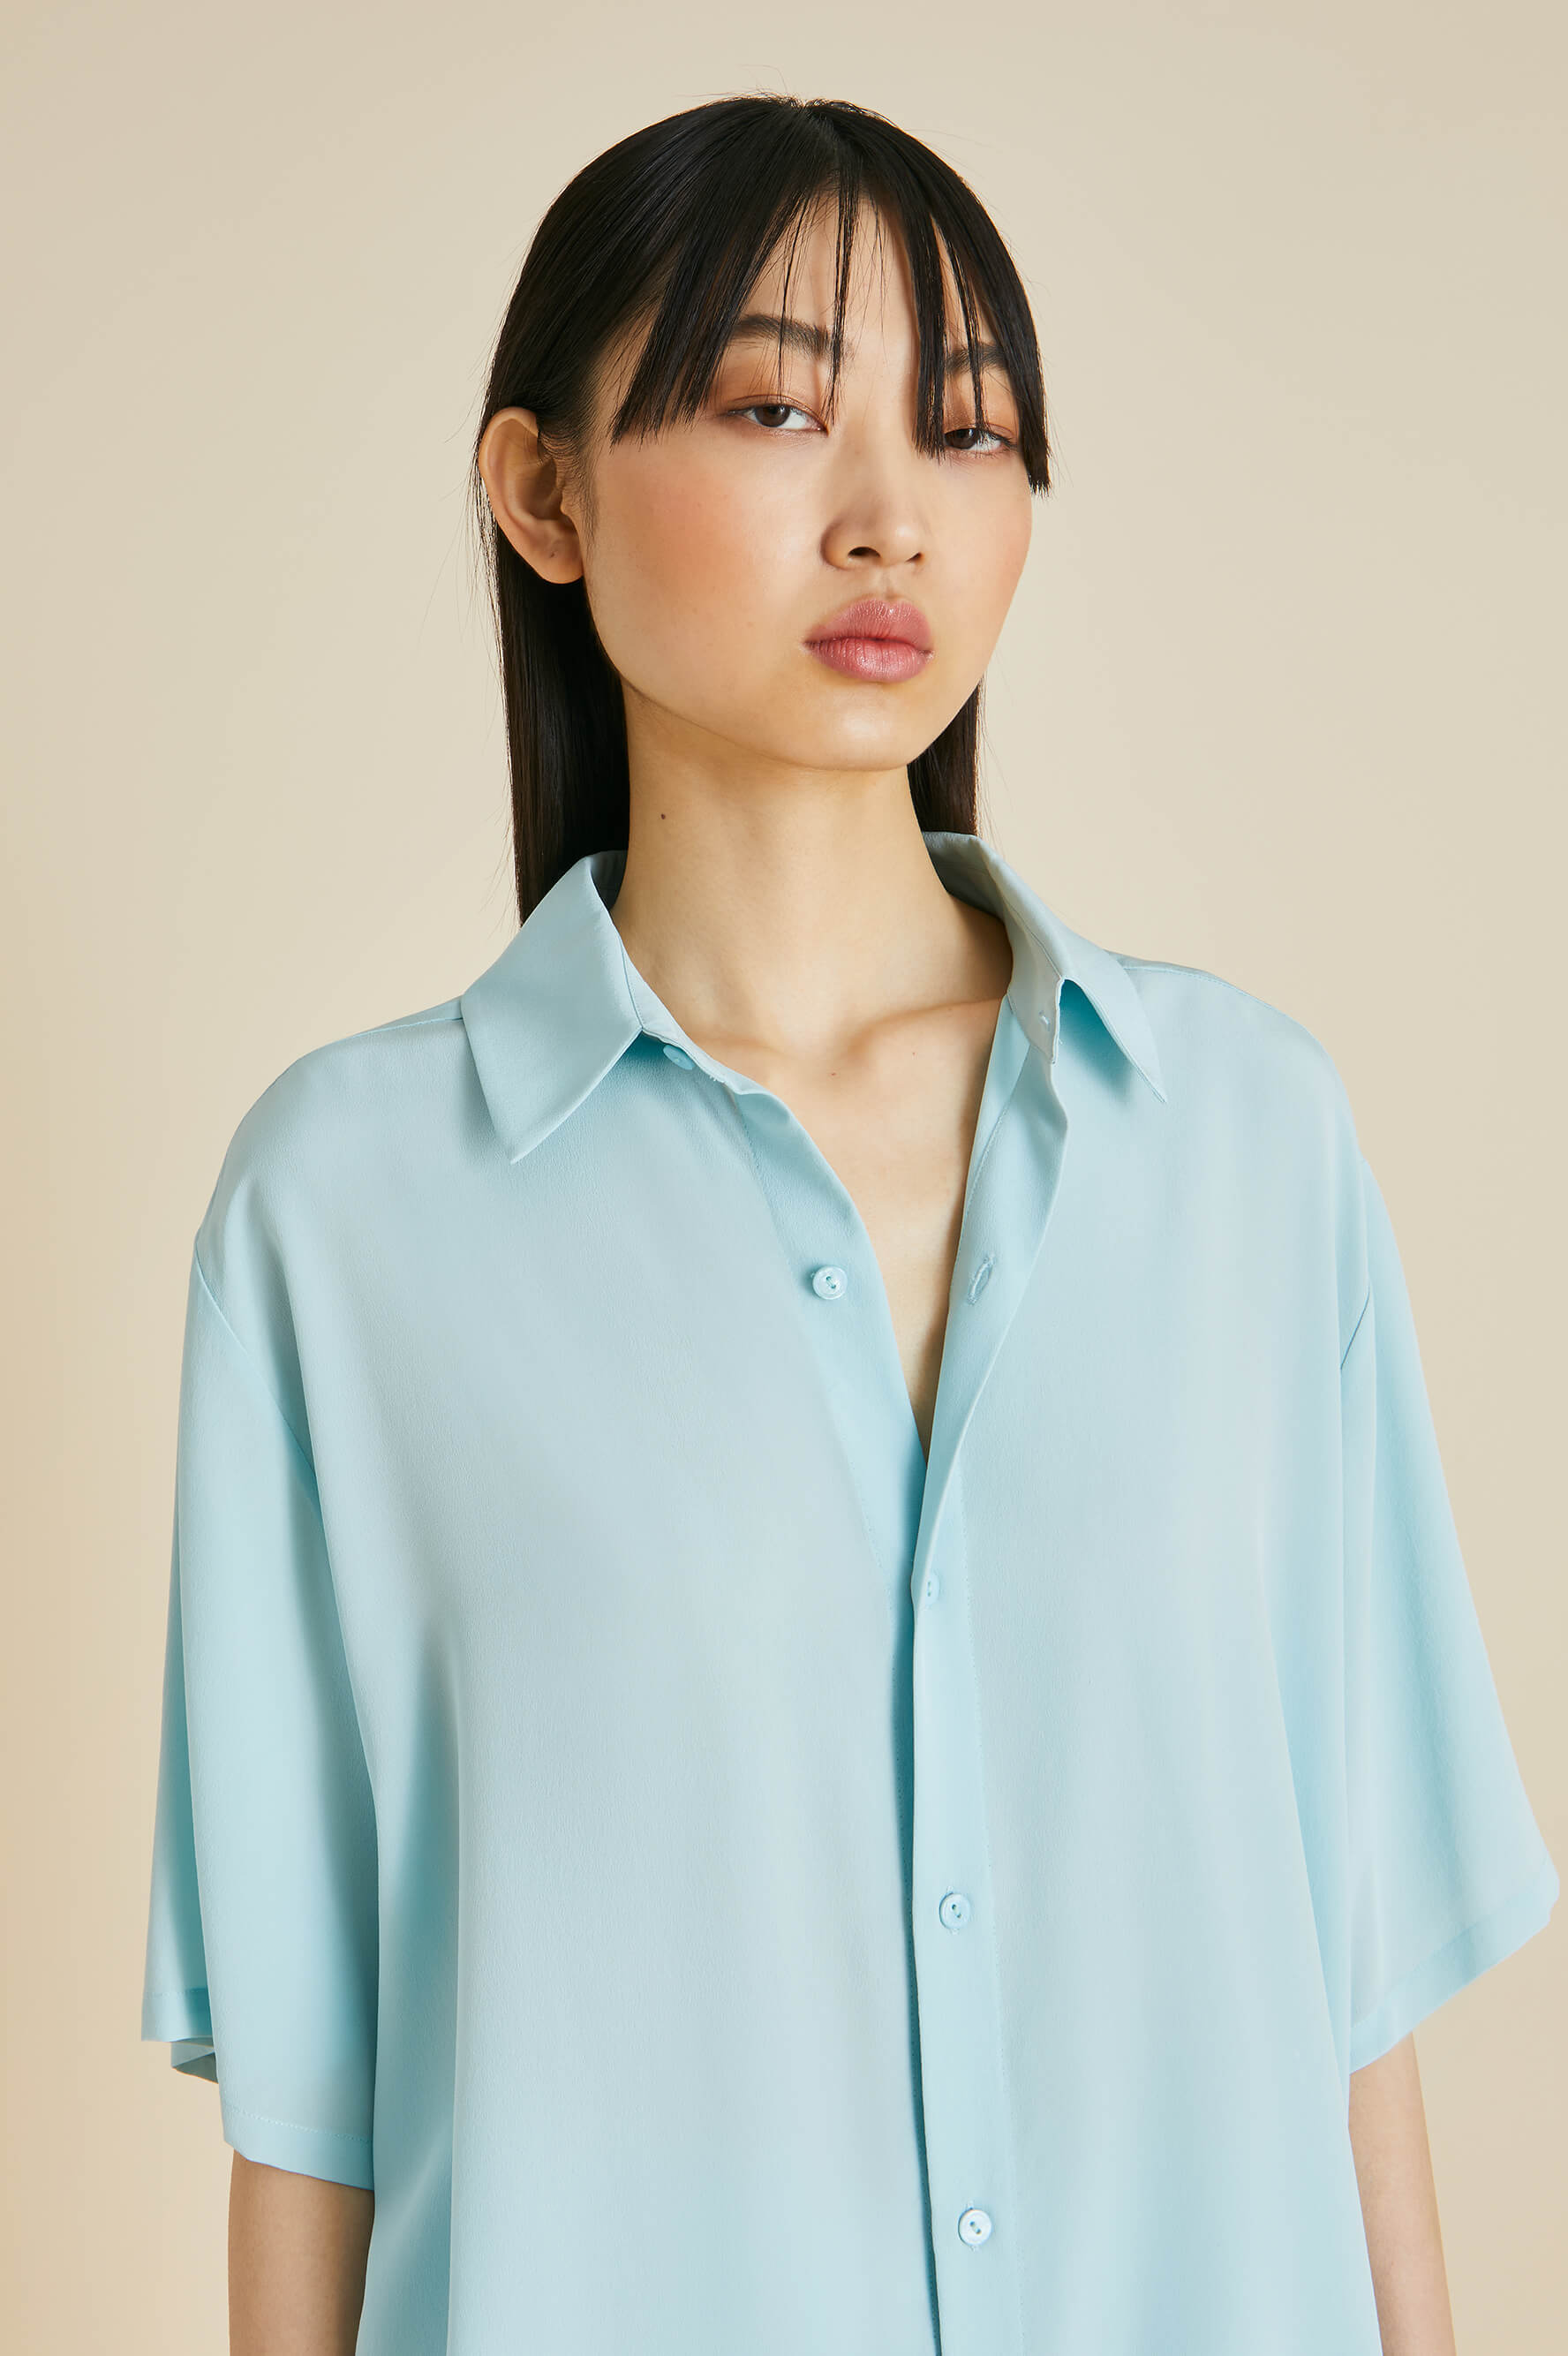 Alabama Blue Pajamas in Silk Crêpe de Chine